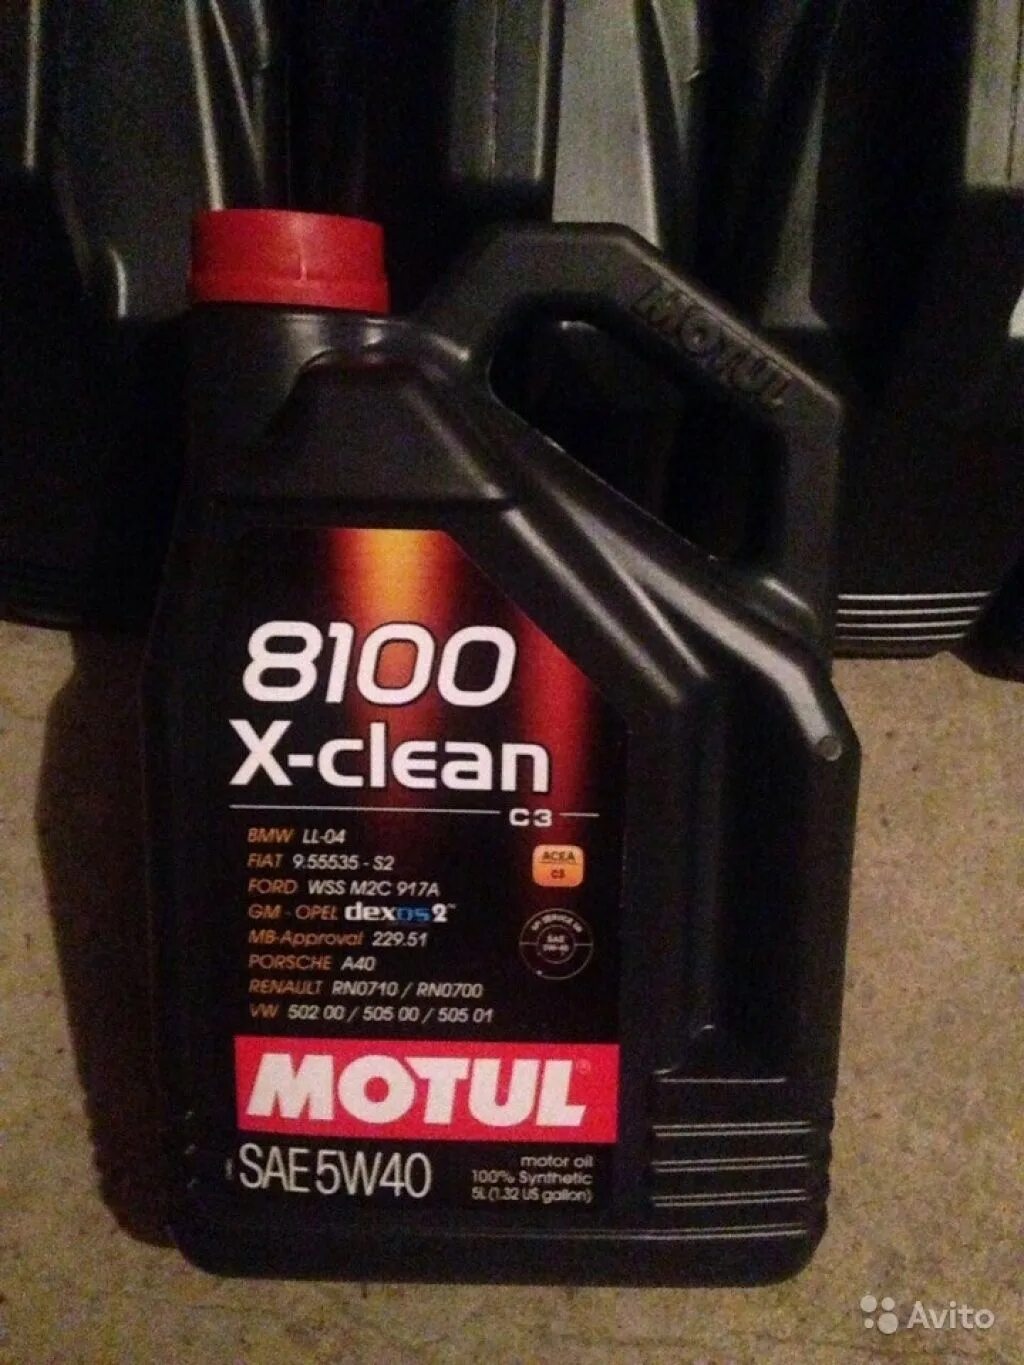 Motul 8100 x-clean 5w40. 8100 X-clean SAE 5w 40. Motul x-clean 5w40. Motul 8100 x-clean 5w40 4л. Масло мотюль 8100 x clean